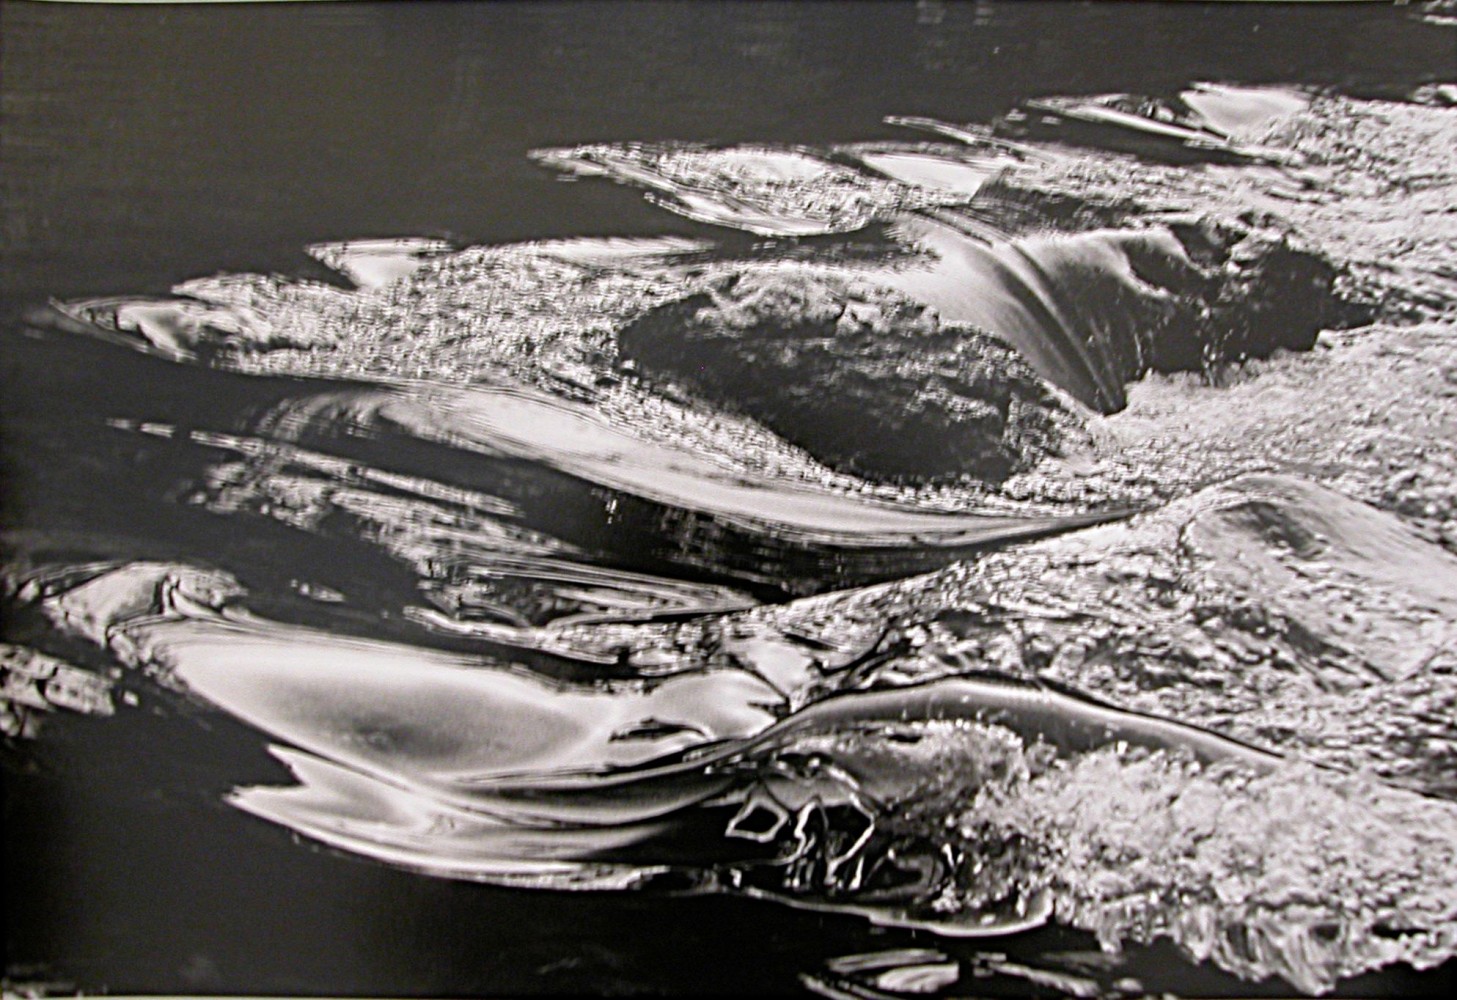 Jeux d&amp;#39;eau, Homage a Courbet, Ornans, 1979
silver gelatin print
14 x 18 7/8 inches; 35.6 x 48 centimeters
LSFA# 11067